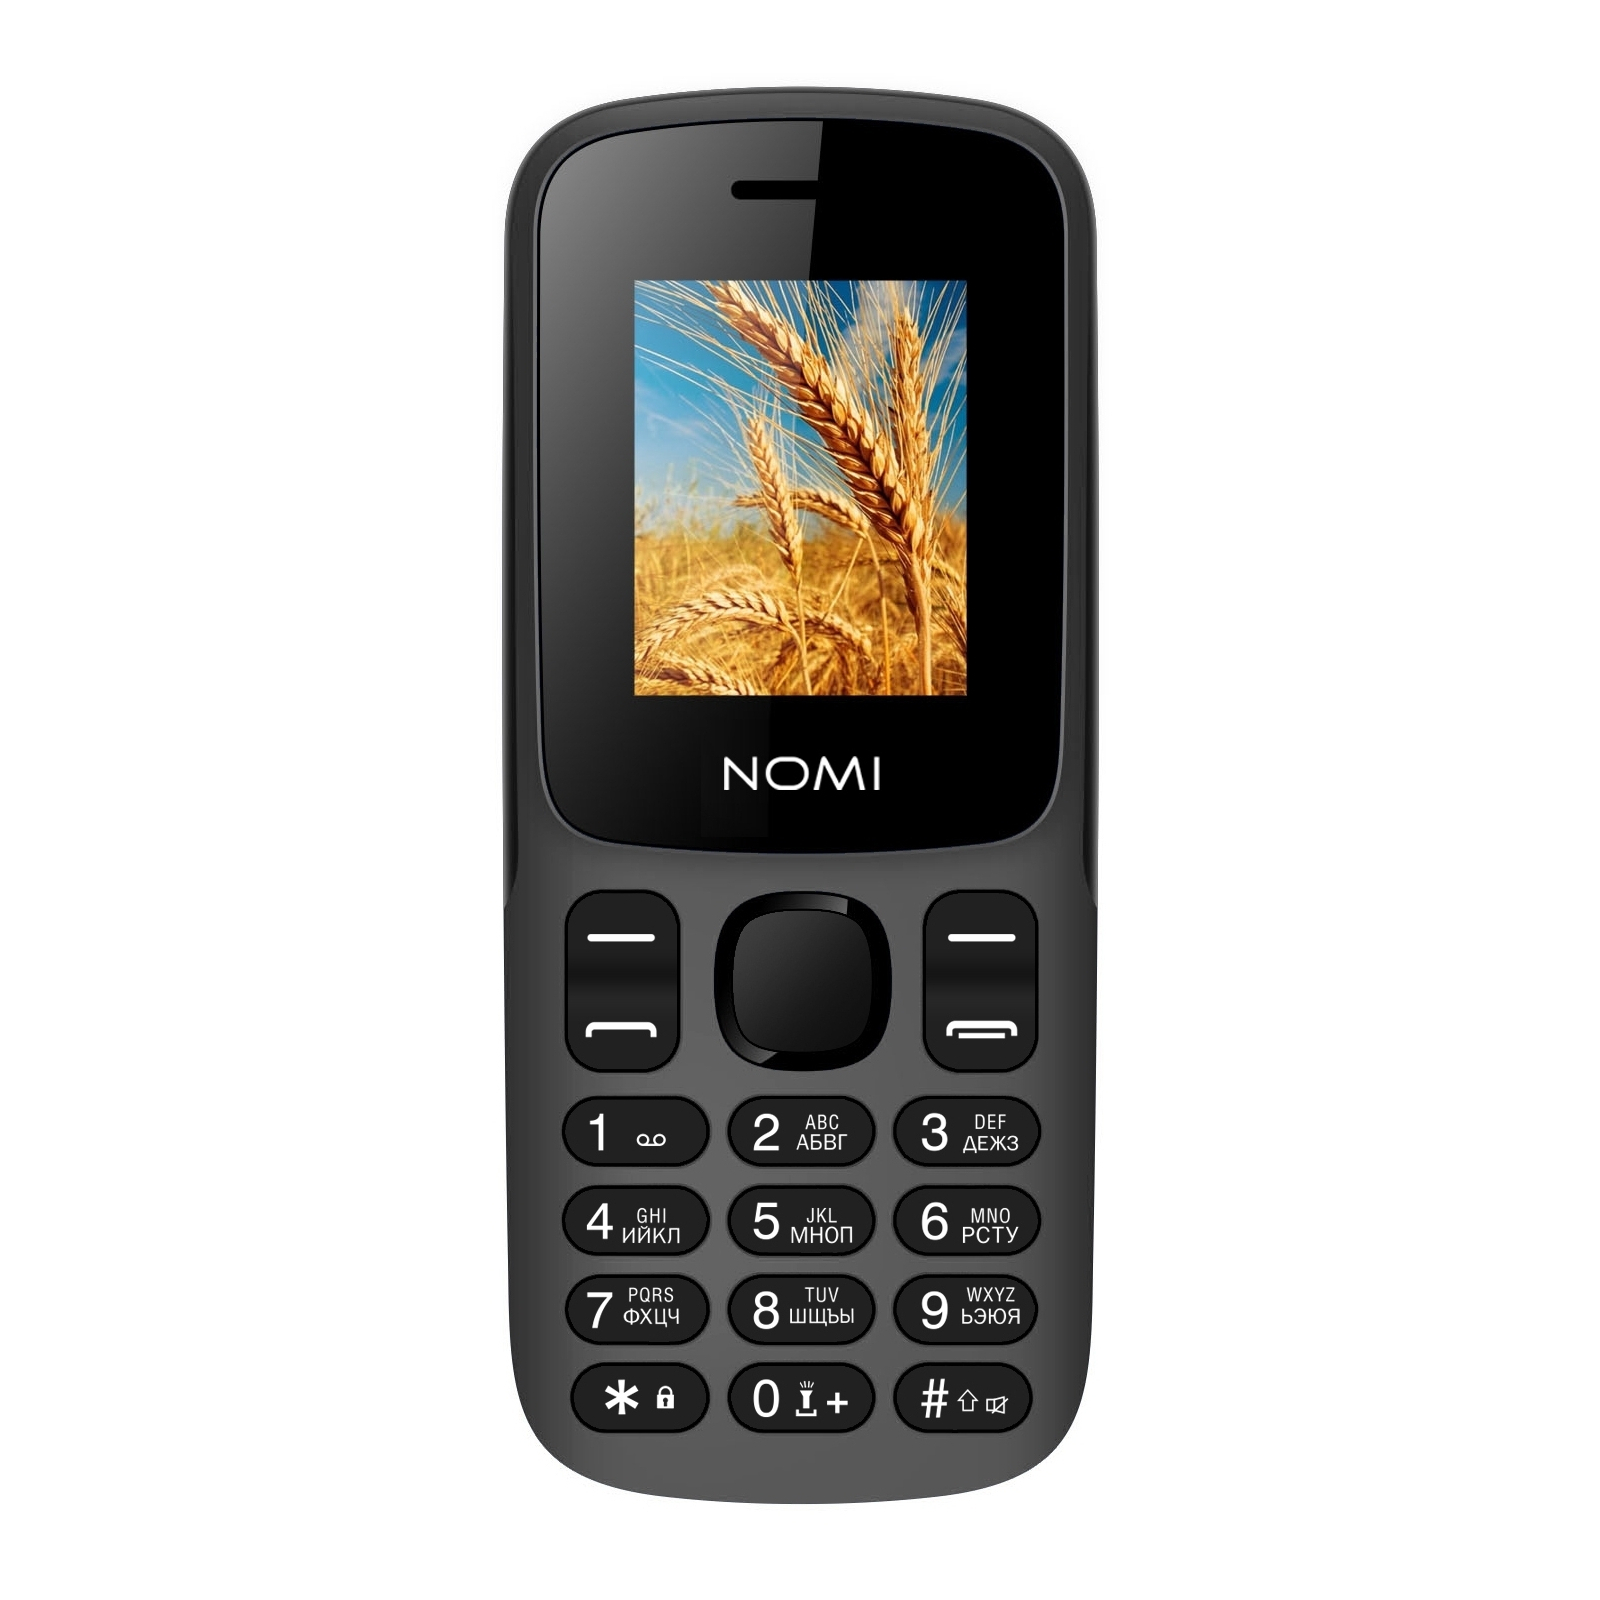 Мобильный телефон Nomi i1890 Blue изображение 2